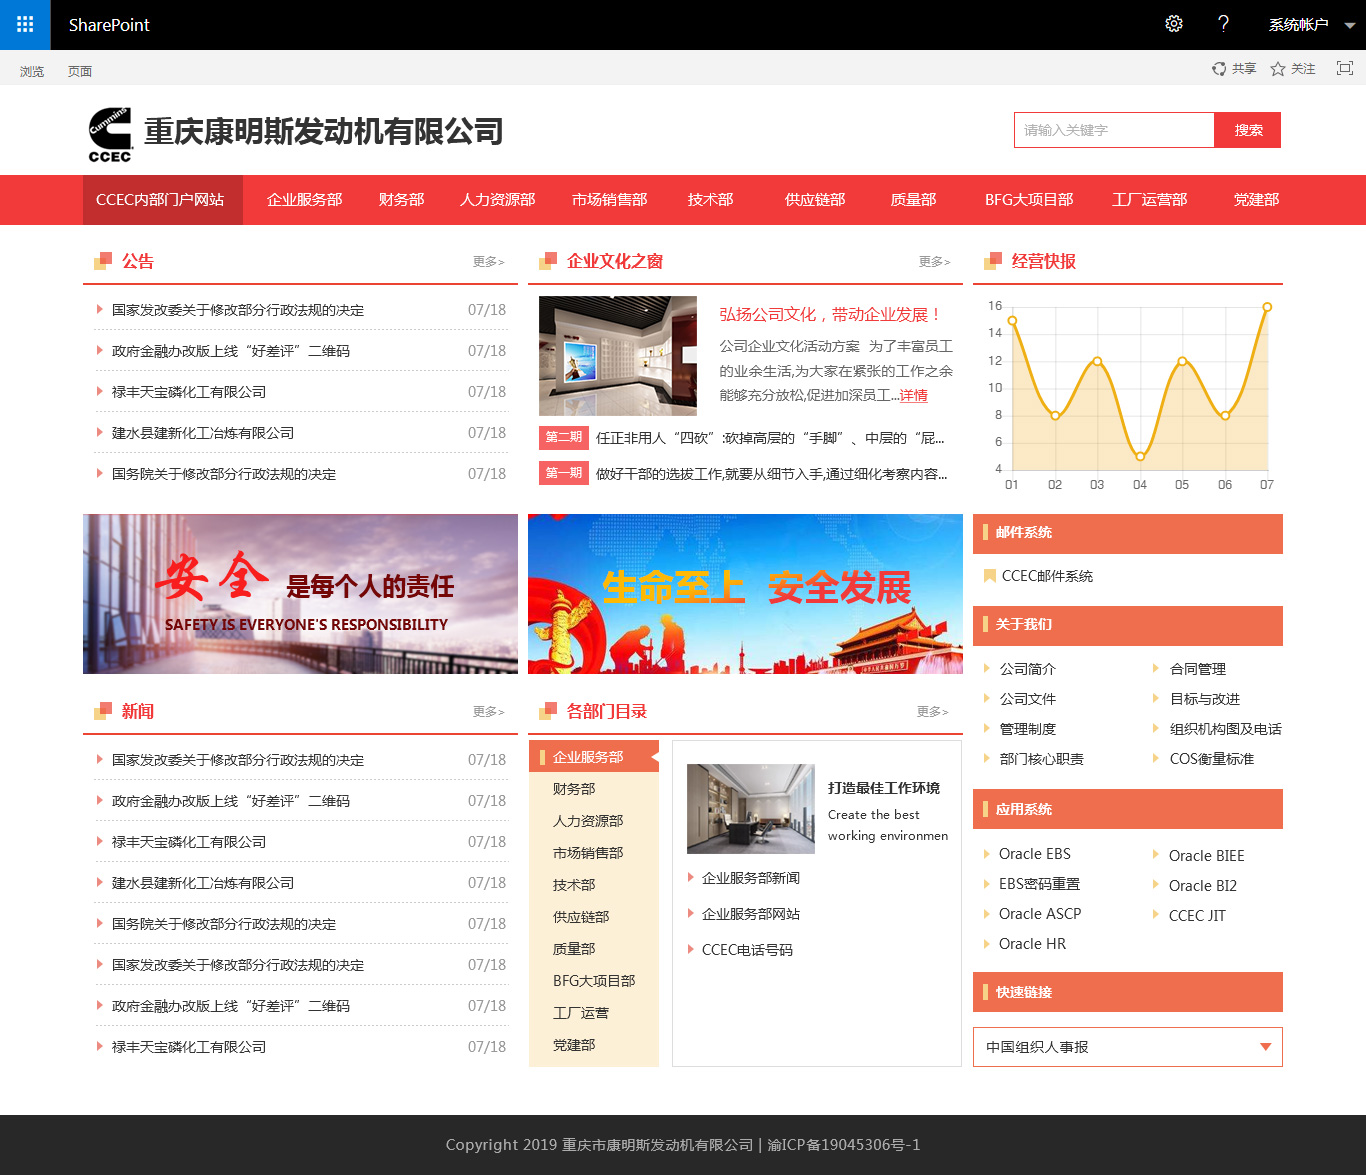 重庆大江动力设备有限公司-SharePoint2007升级至2019